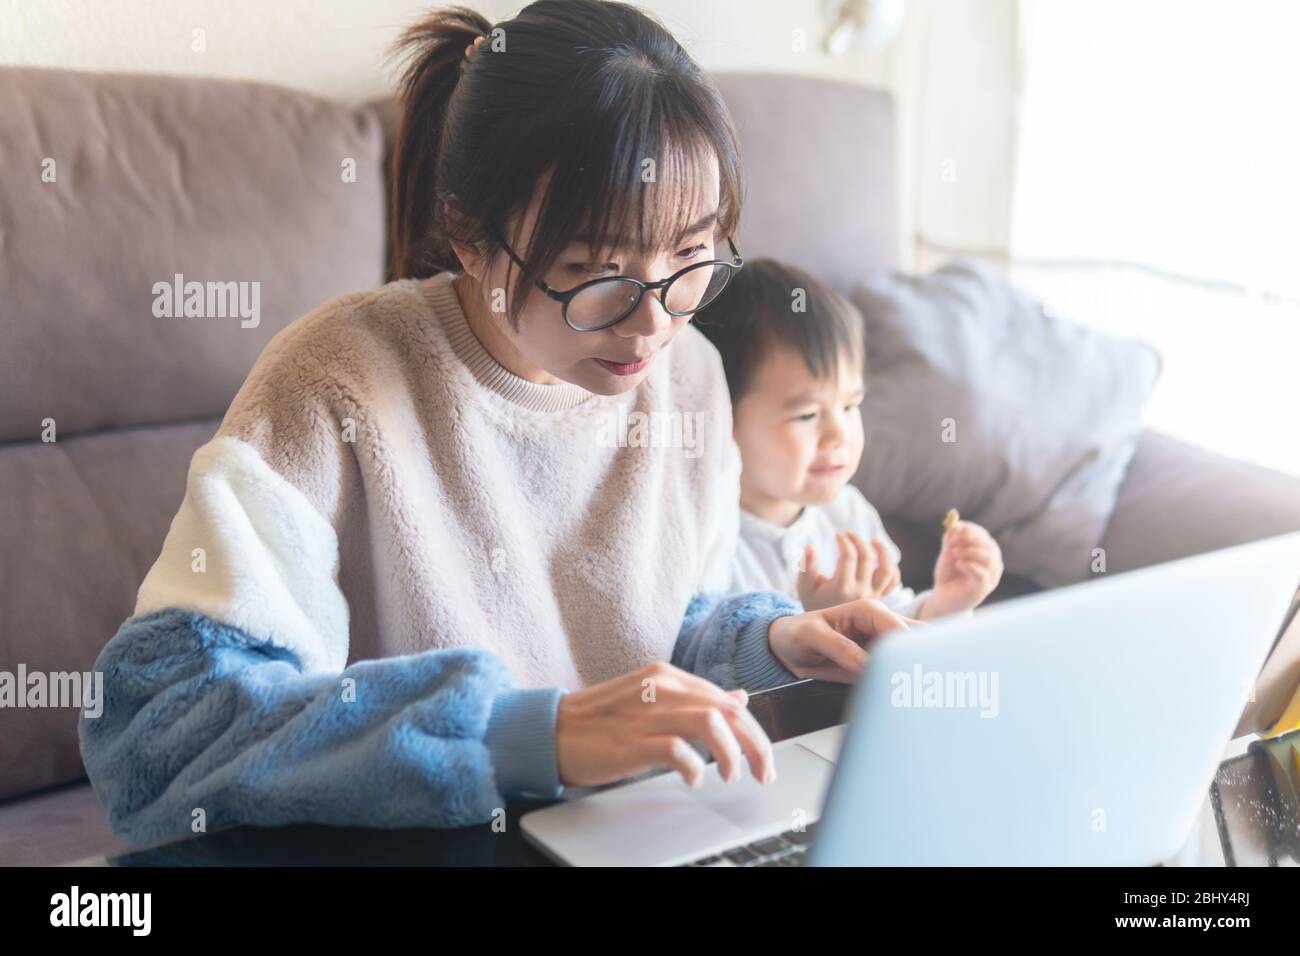 Jeune mère asiatique travaillant à domicile sur ordinateur. Un enfant regarde un dessin animé sur une tablette tandis que sa mère travaille sur un ordinateur portable pendant le blocage de la pandémie du coronavirus Banque D'Images